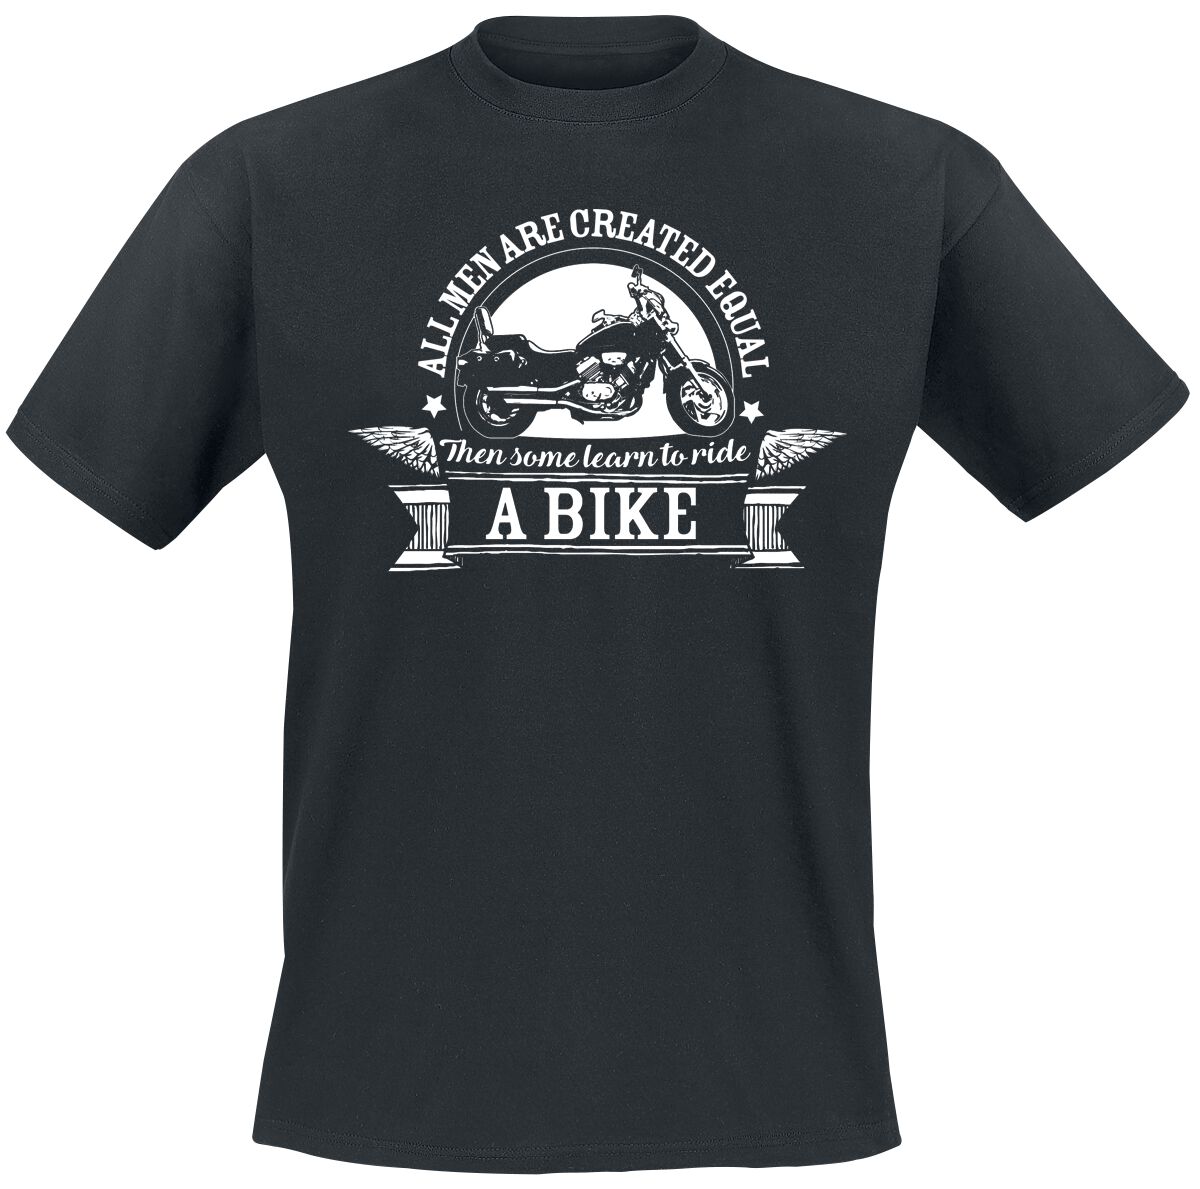 Sprüche T-Shirt - Ride A Bike - L bis 5XL - für Männer - Größe 5XL - schwarz